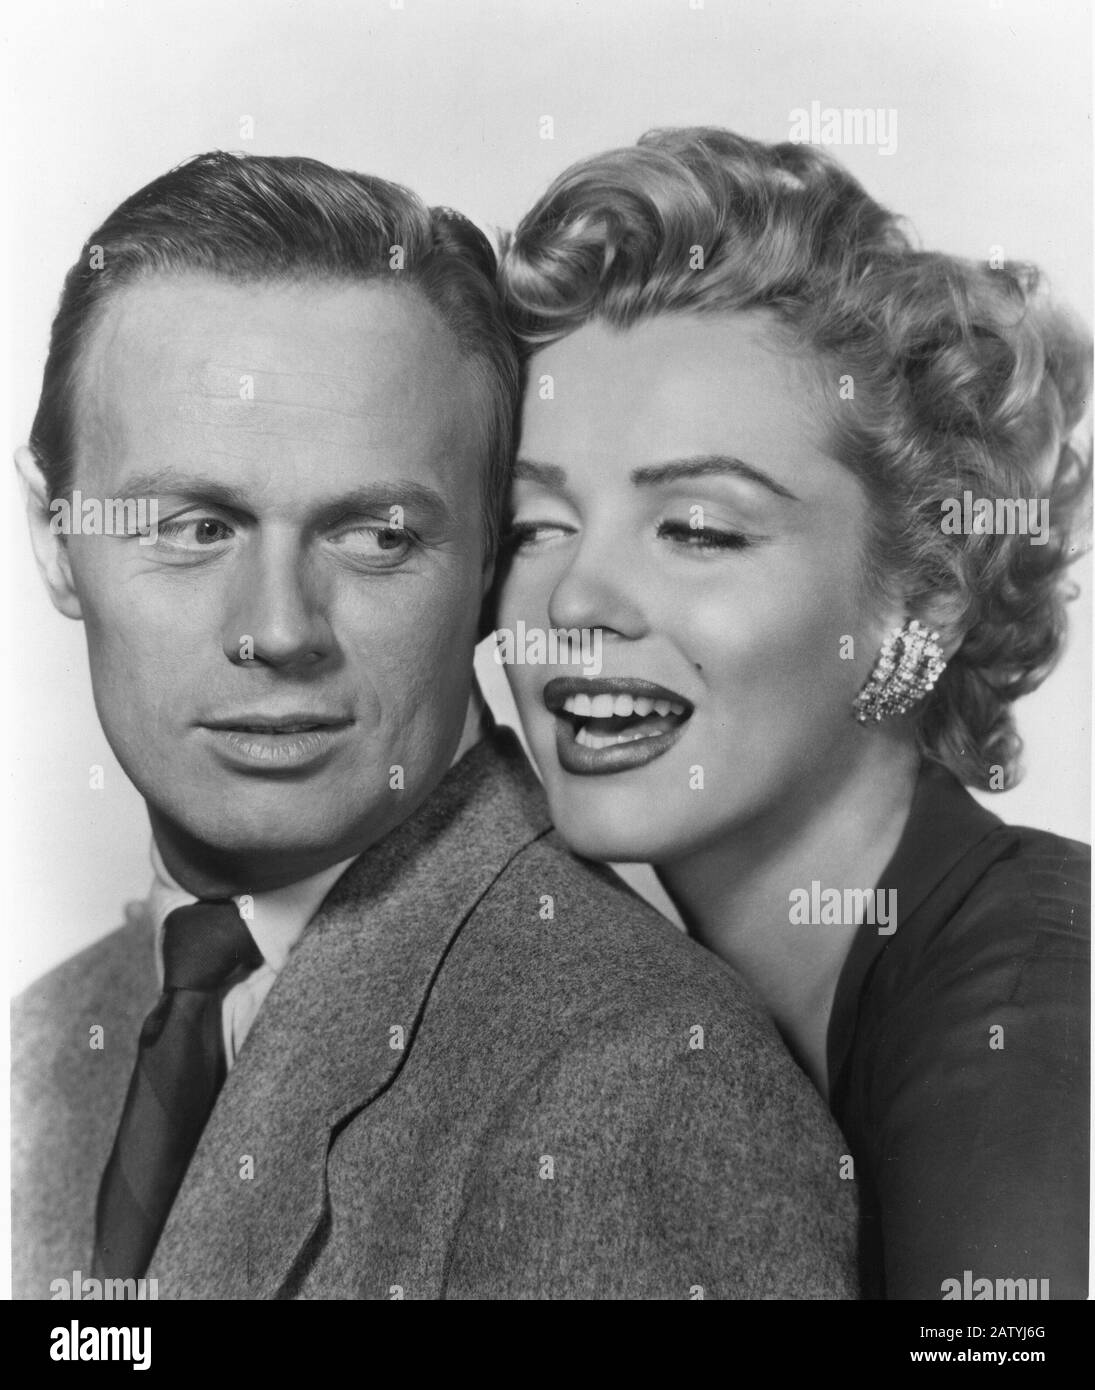 1952 : MARILYN MONROE und RICHARD WIDMARK in DON' T MÜHE ZU KLOPFEN ( La tua bocca brucia ) von Roy Baker , 20th Century Fox pubblicity still - ERZ Stockfoto